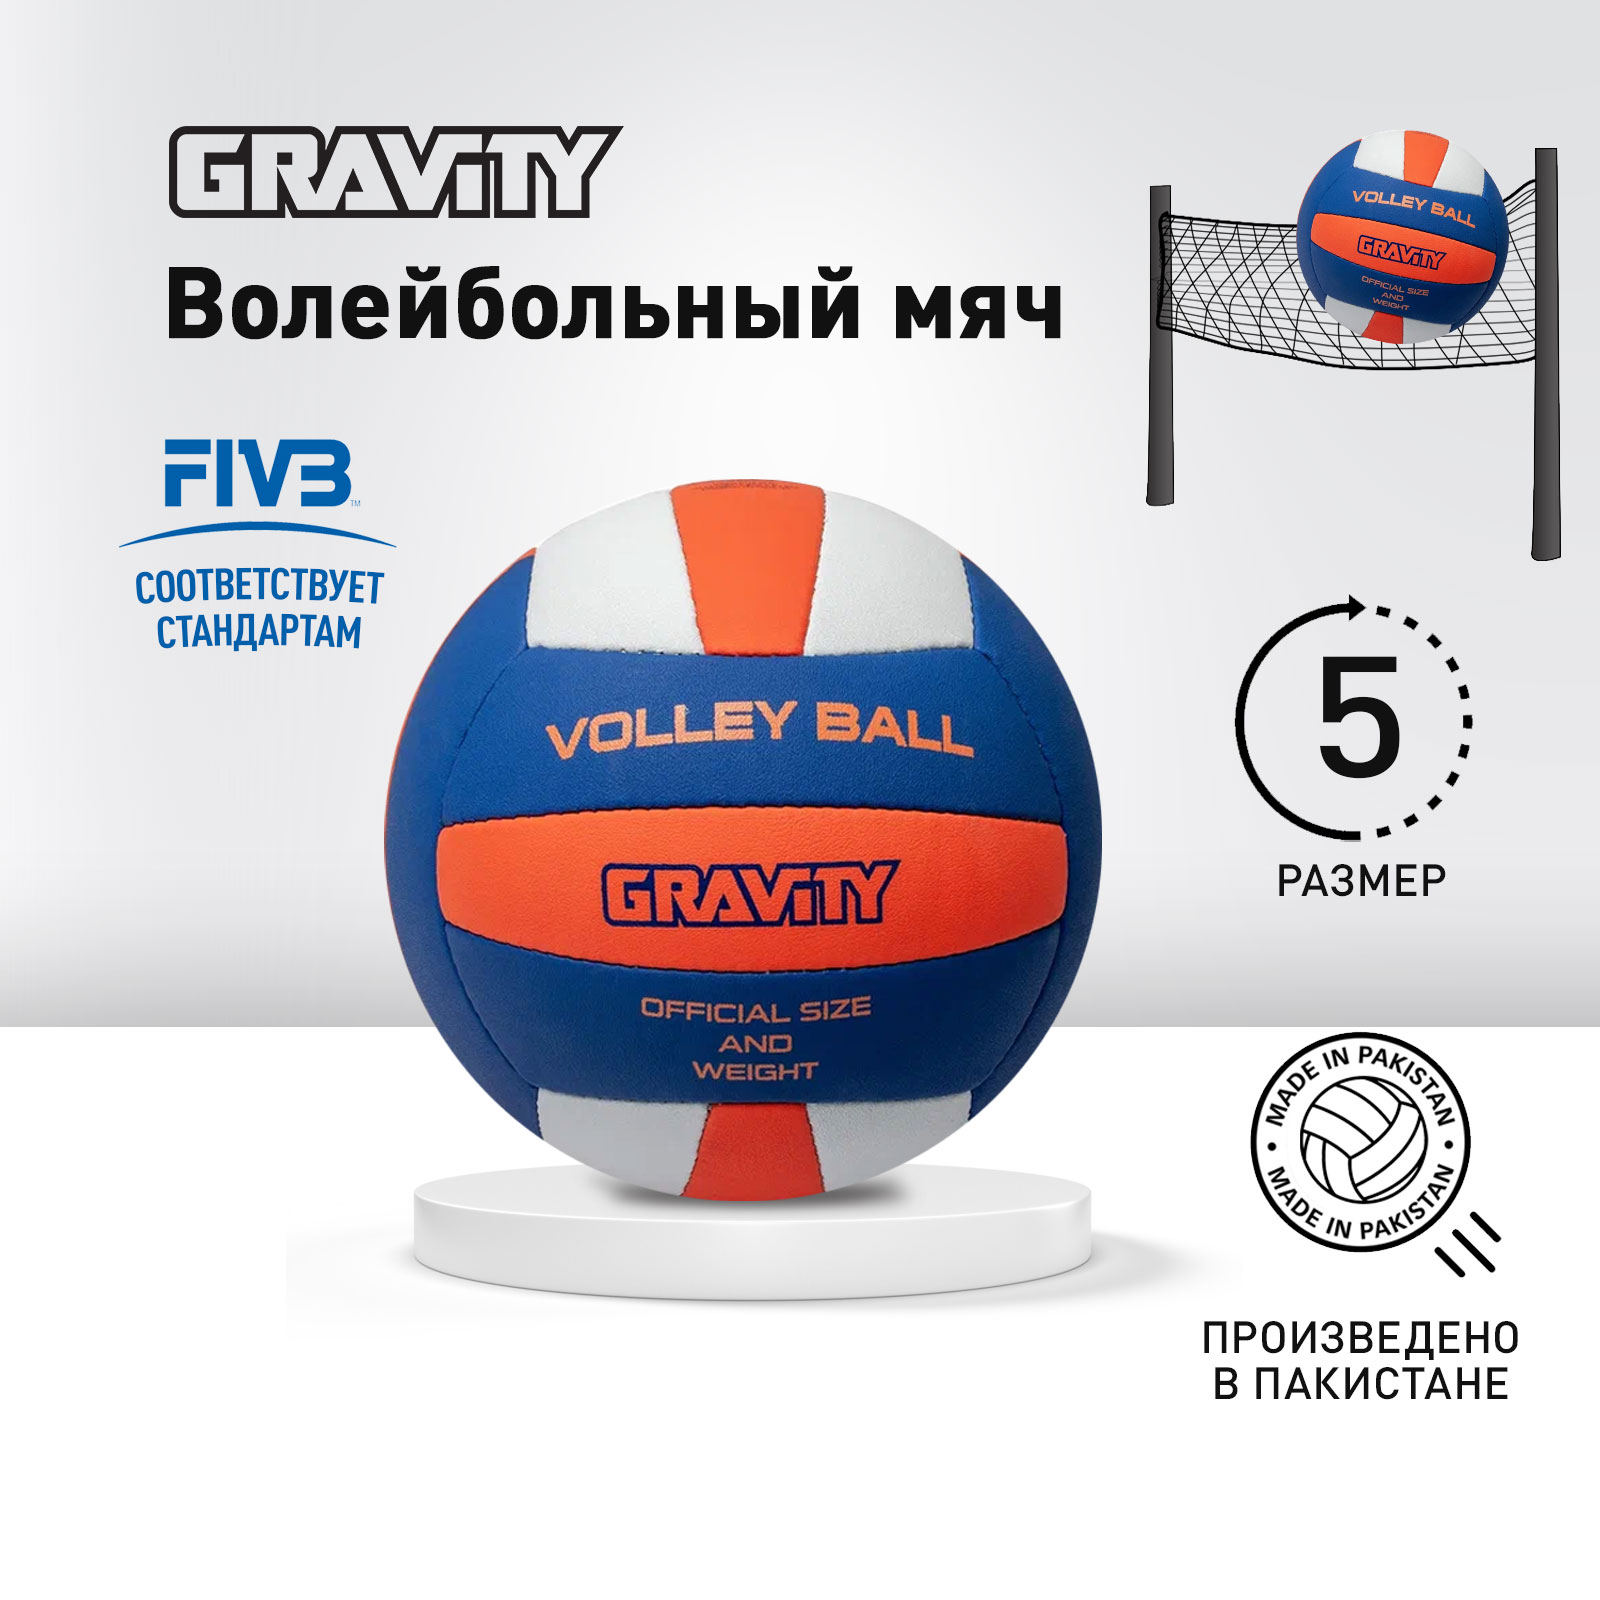 Волейбольный мяч Gravity, ручная сшивка, VOLLEY BALL